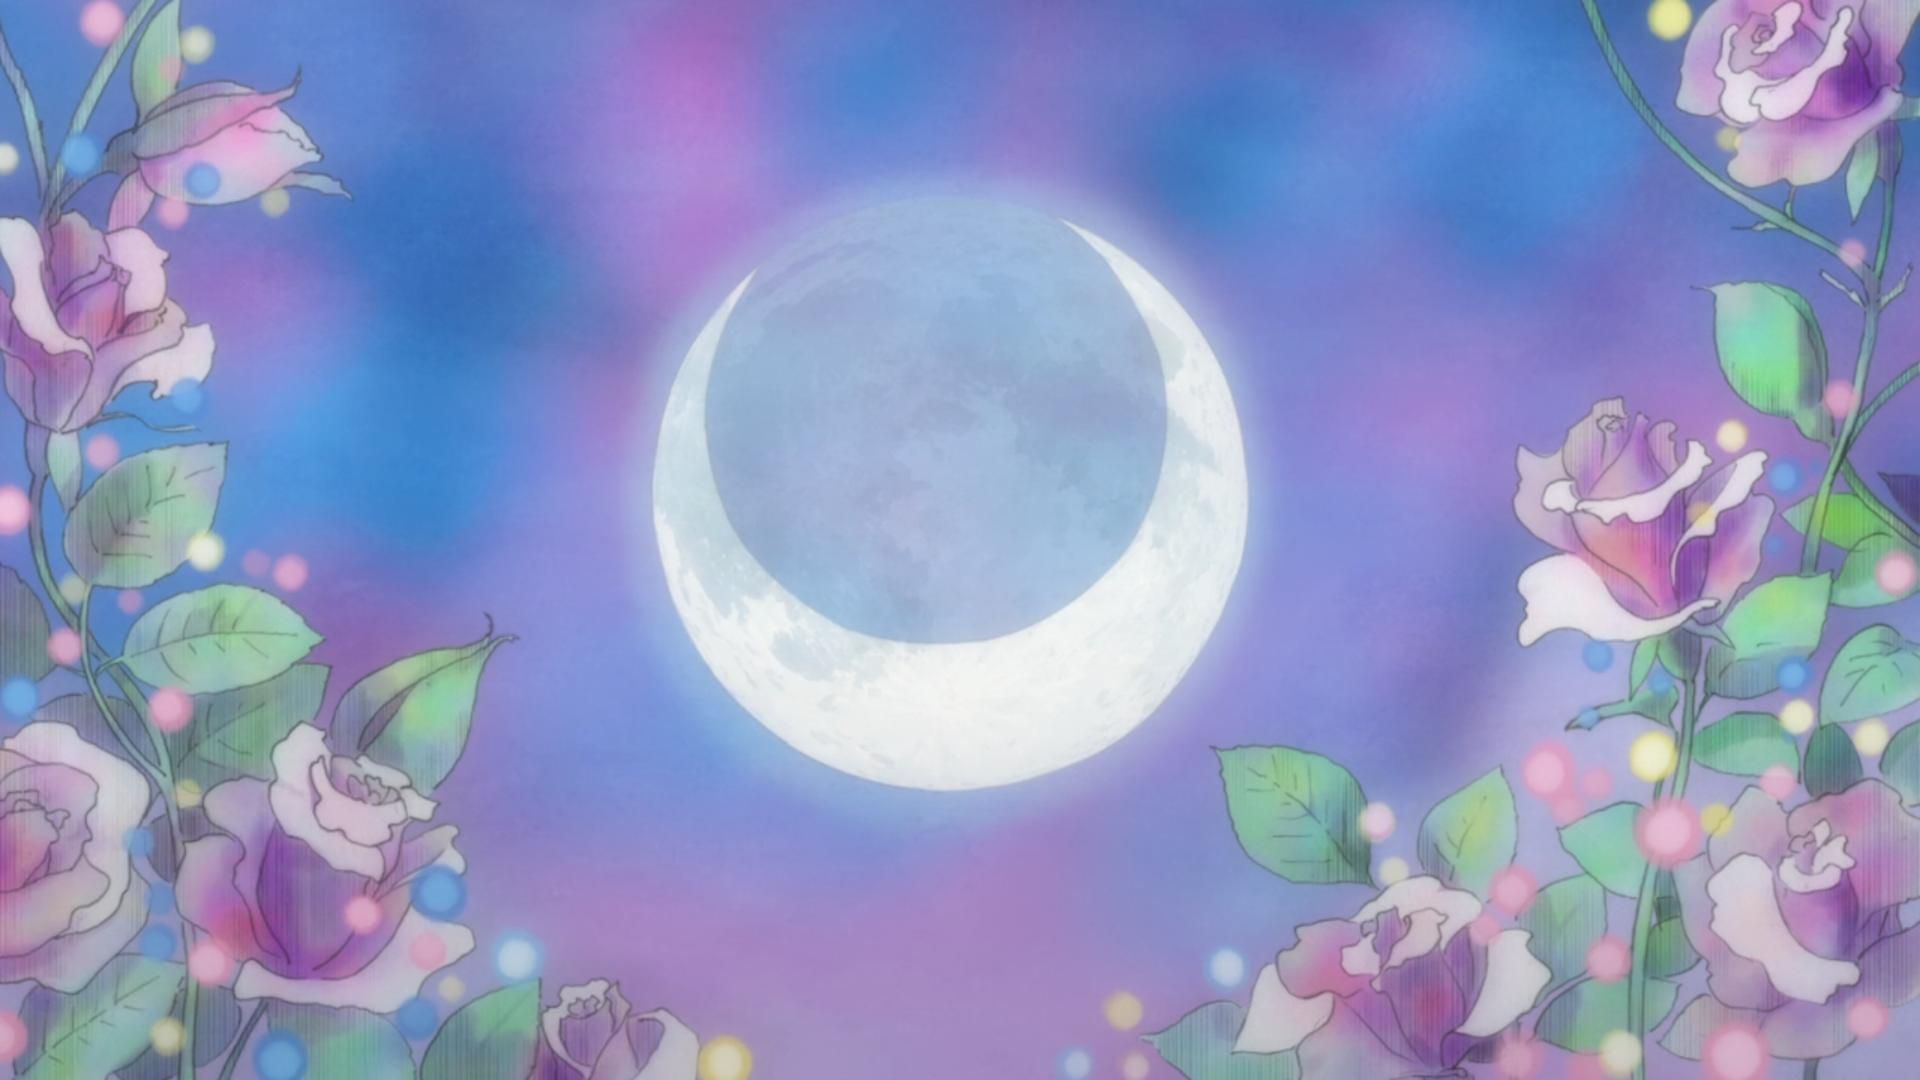 50+] Sailor Moon Desktop Wallpaper - WallpaperSafari